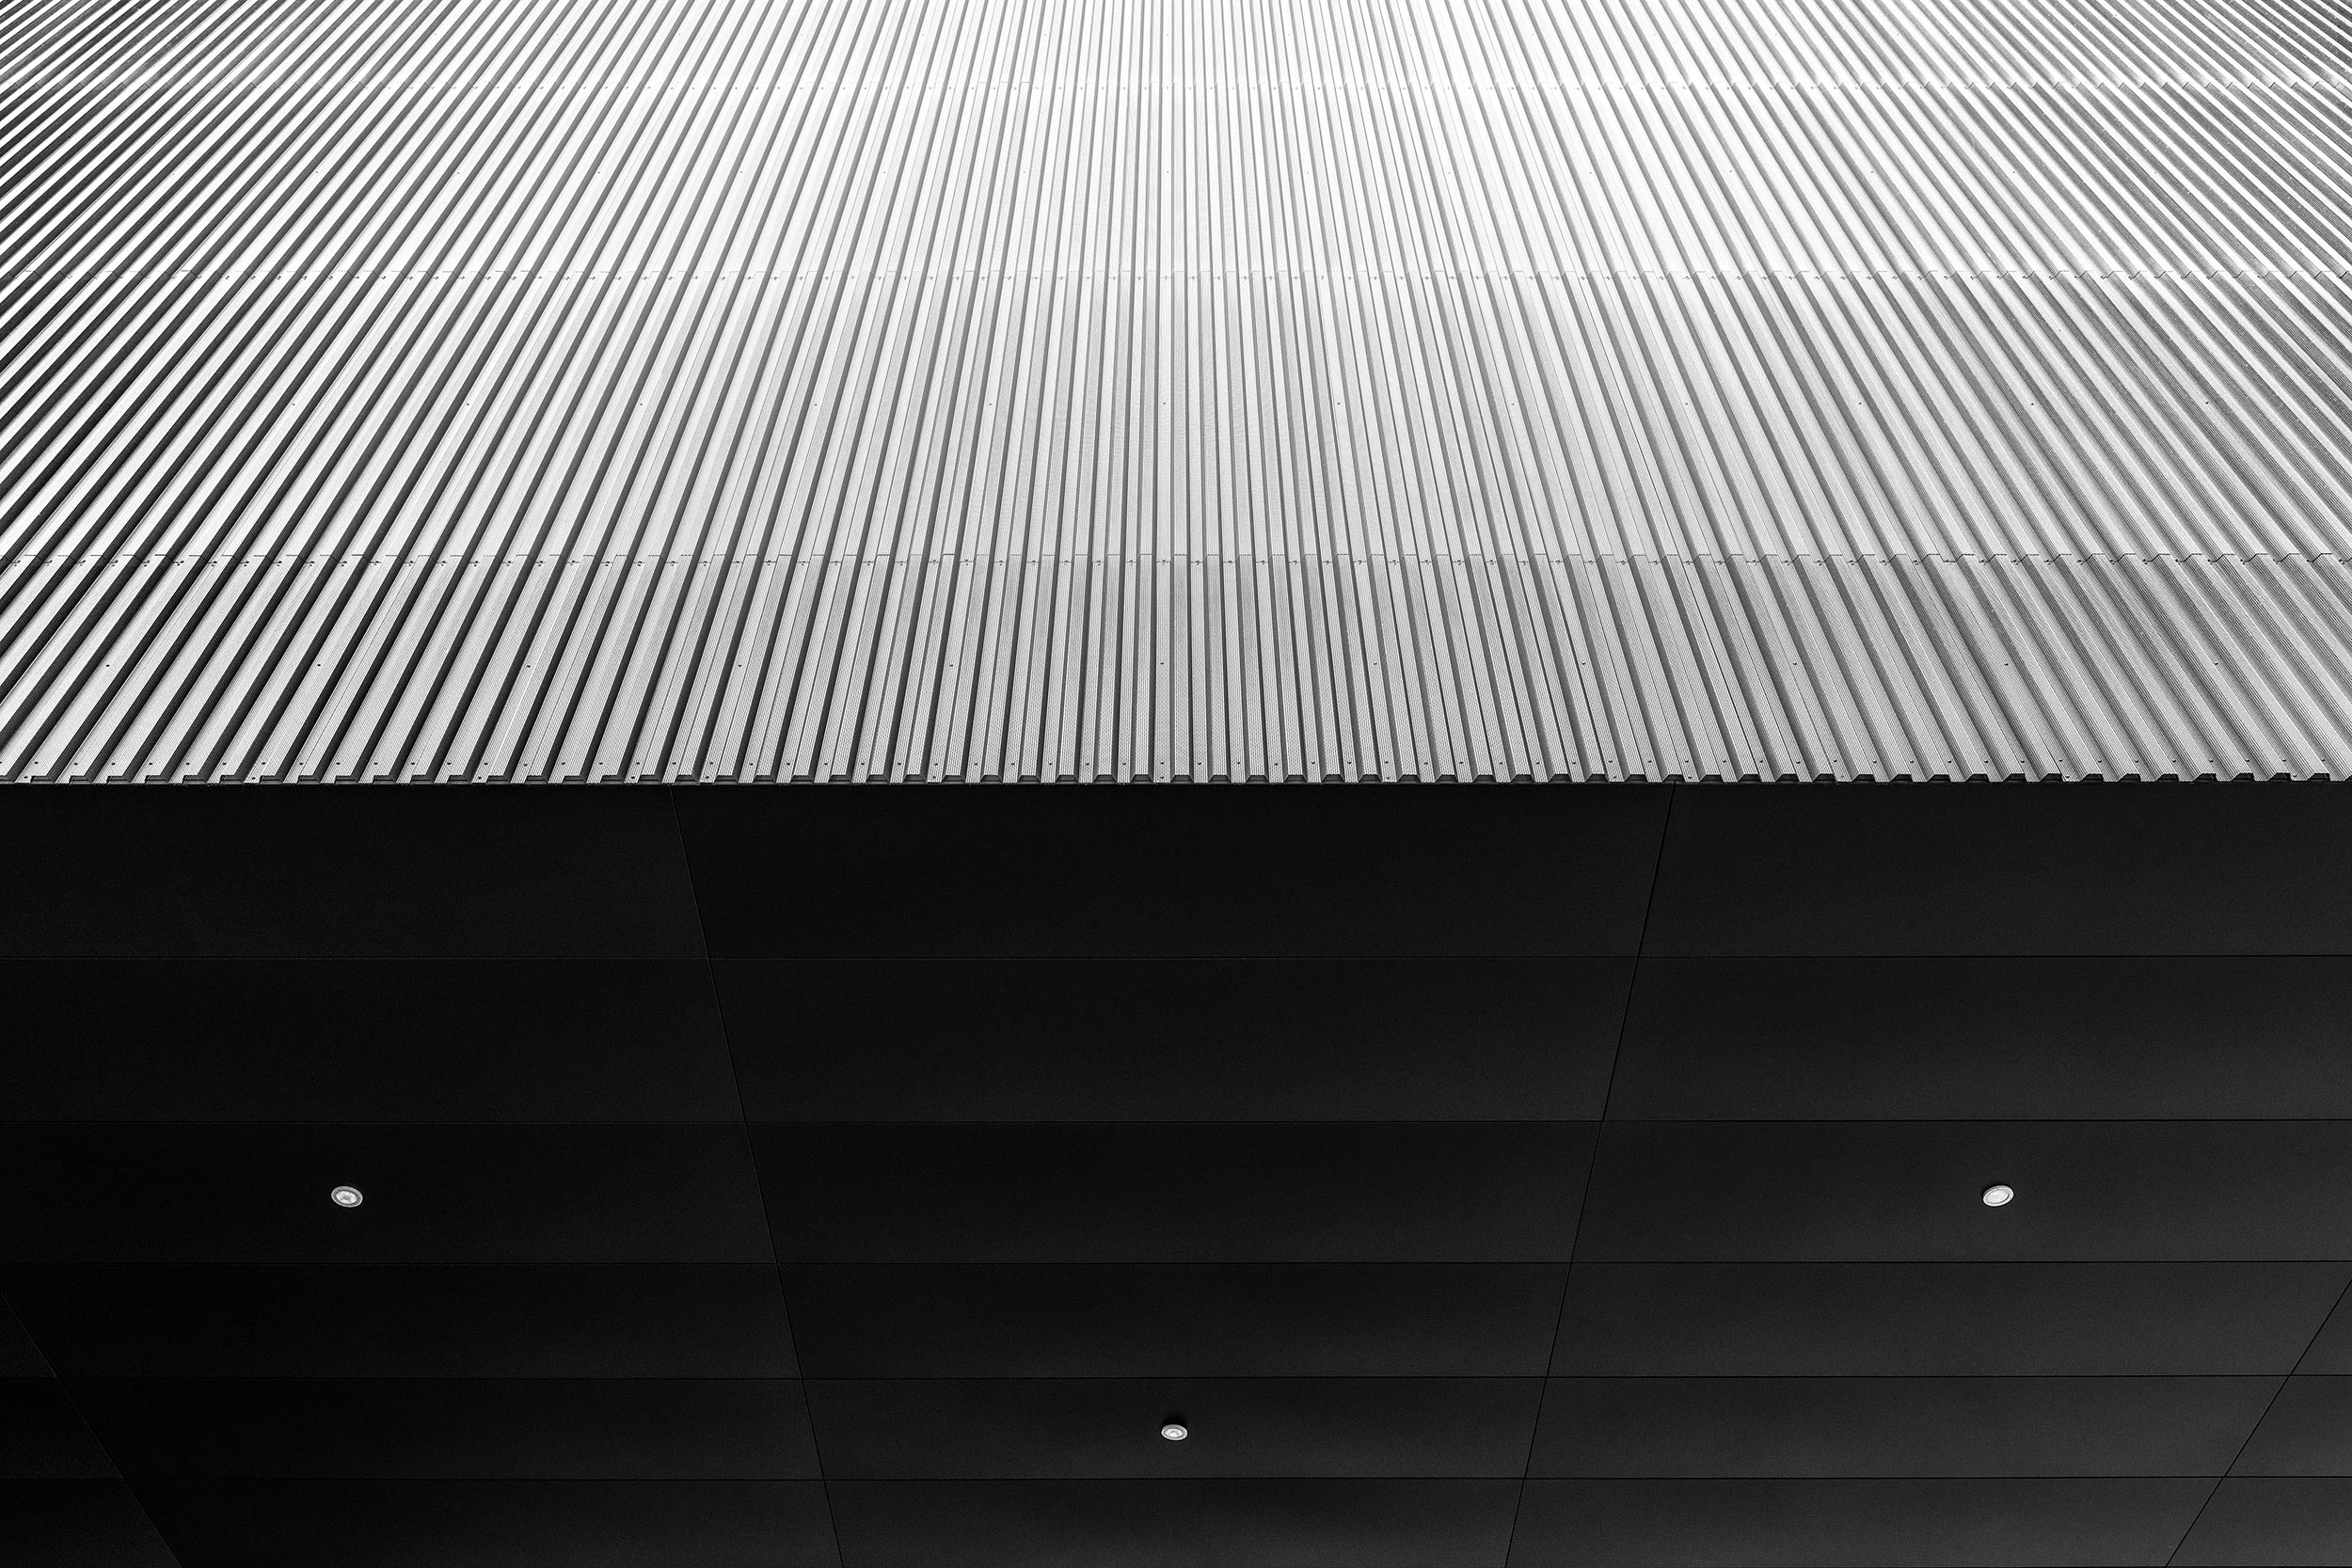 Exhibition Hall A, Innsbruck, Austria - Cukrowicz Nachbaur Architekten - Black & White Fine Art Architecture Photography